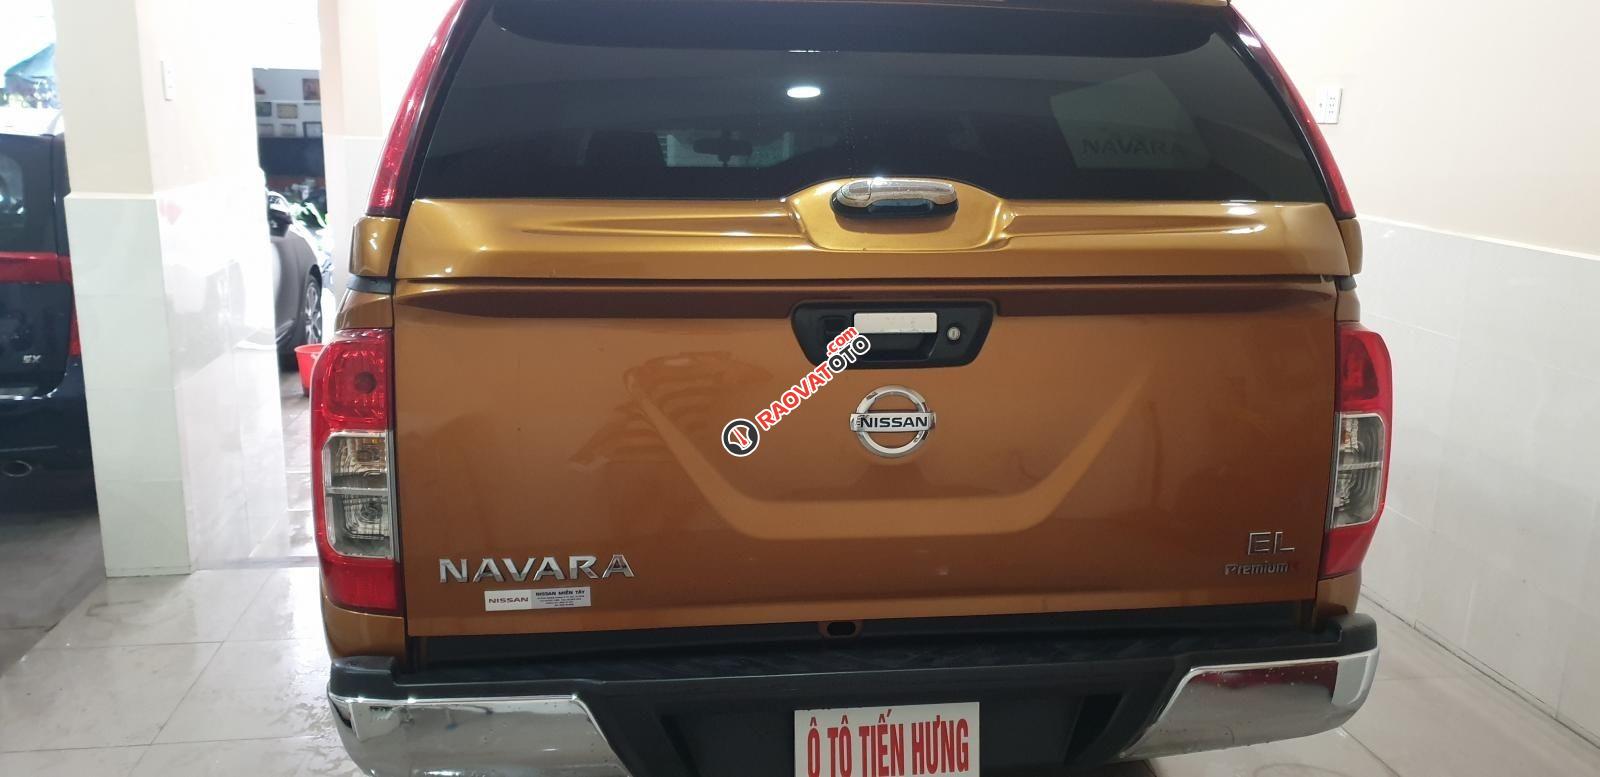 Bán Nissan Navara EL Premium R nhập khẩu dầu 2.5 số tự động, đk T3/2018 màu cam, đẹp mới 95%-12